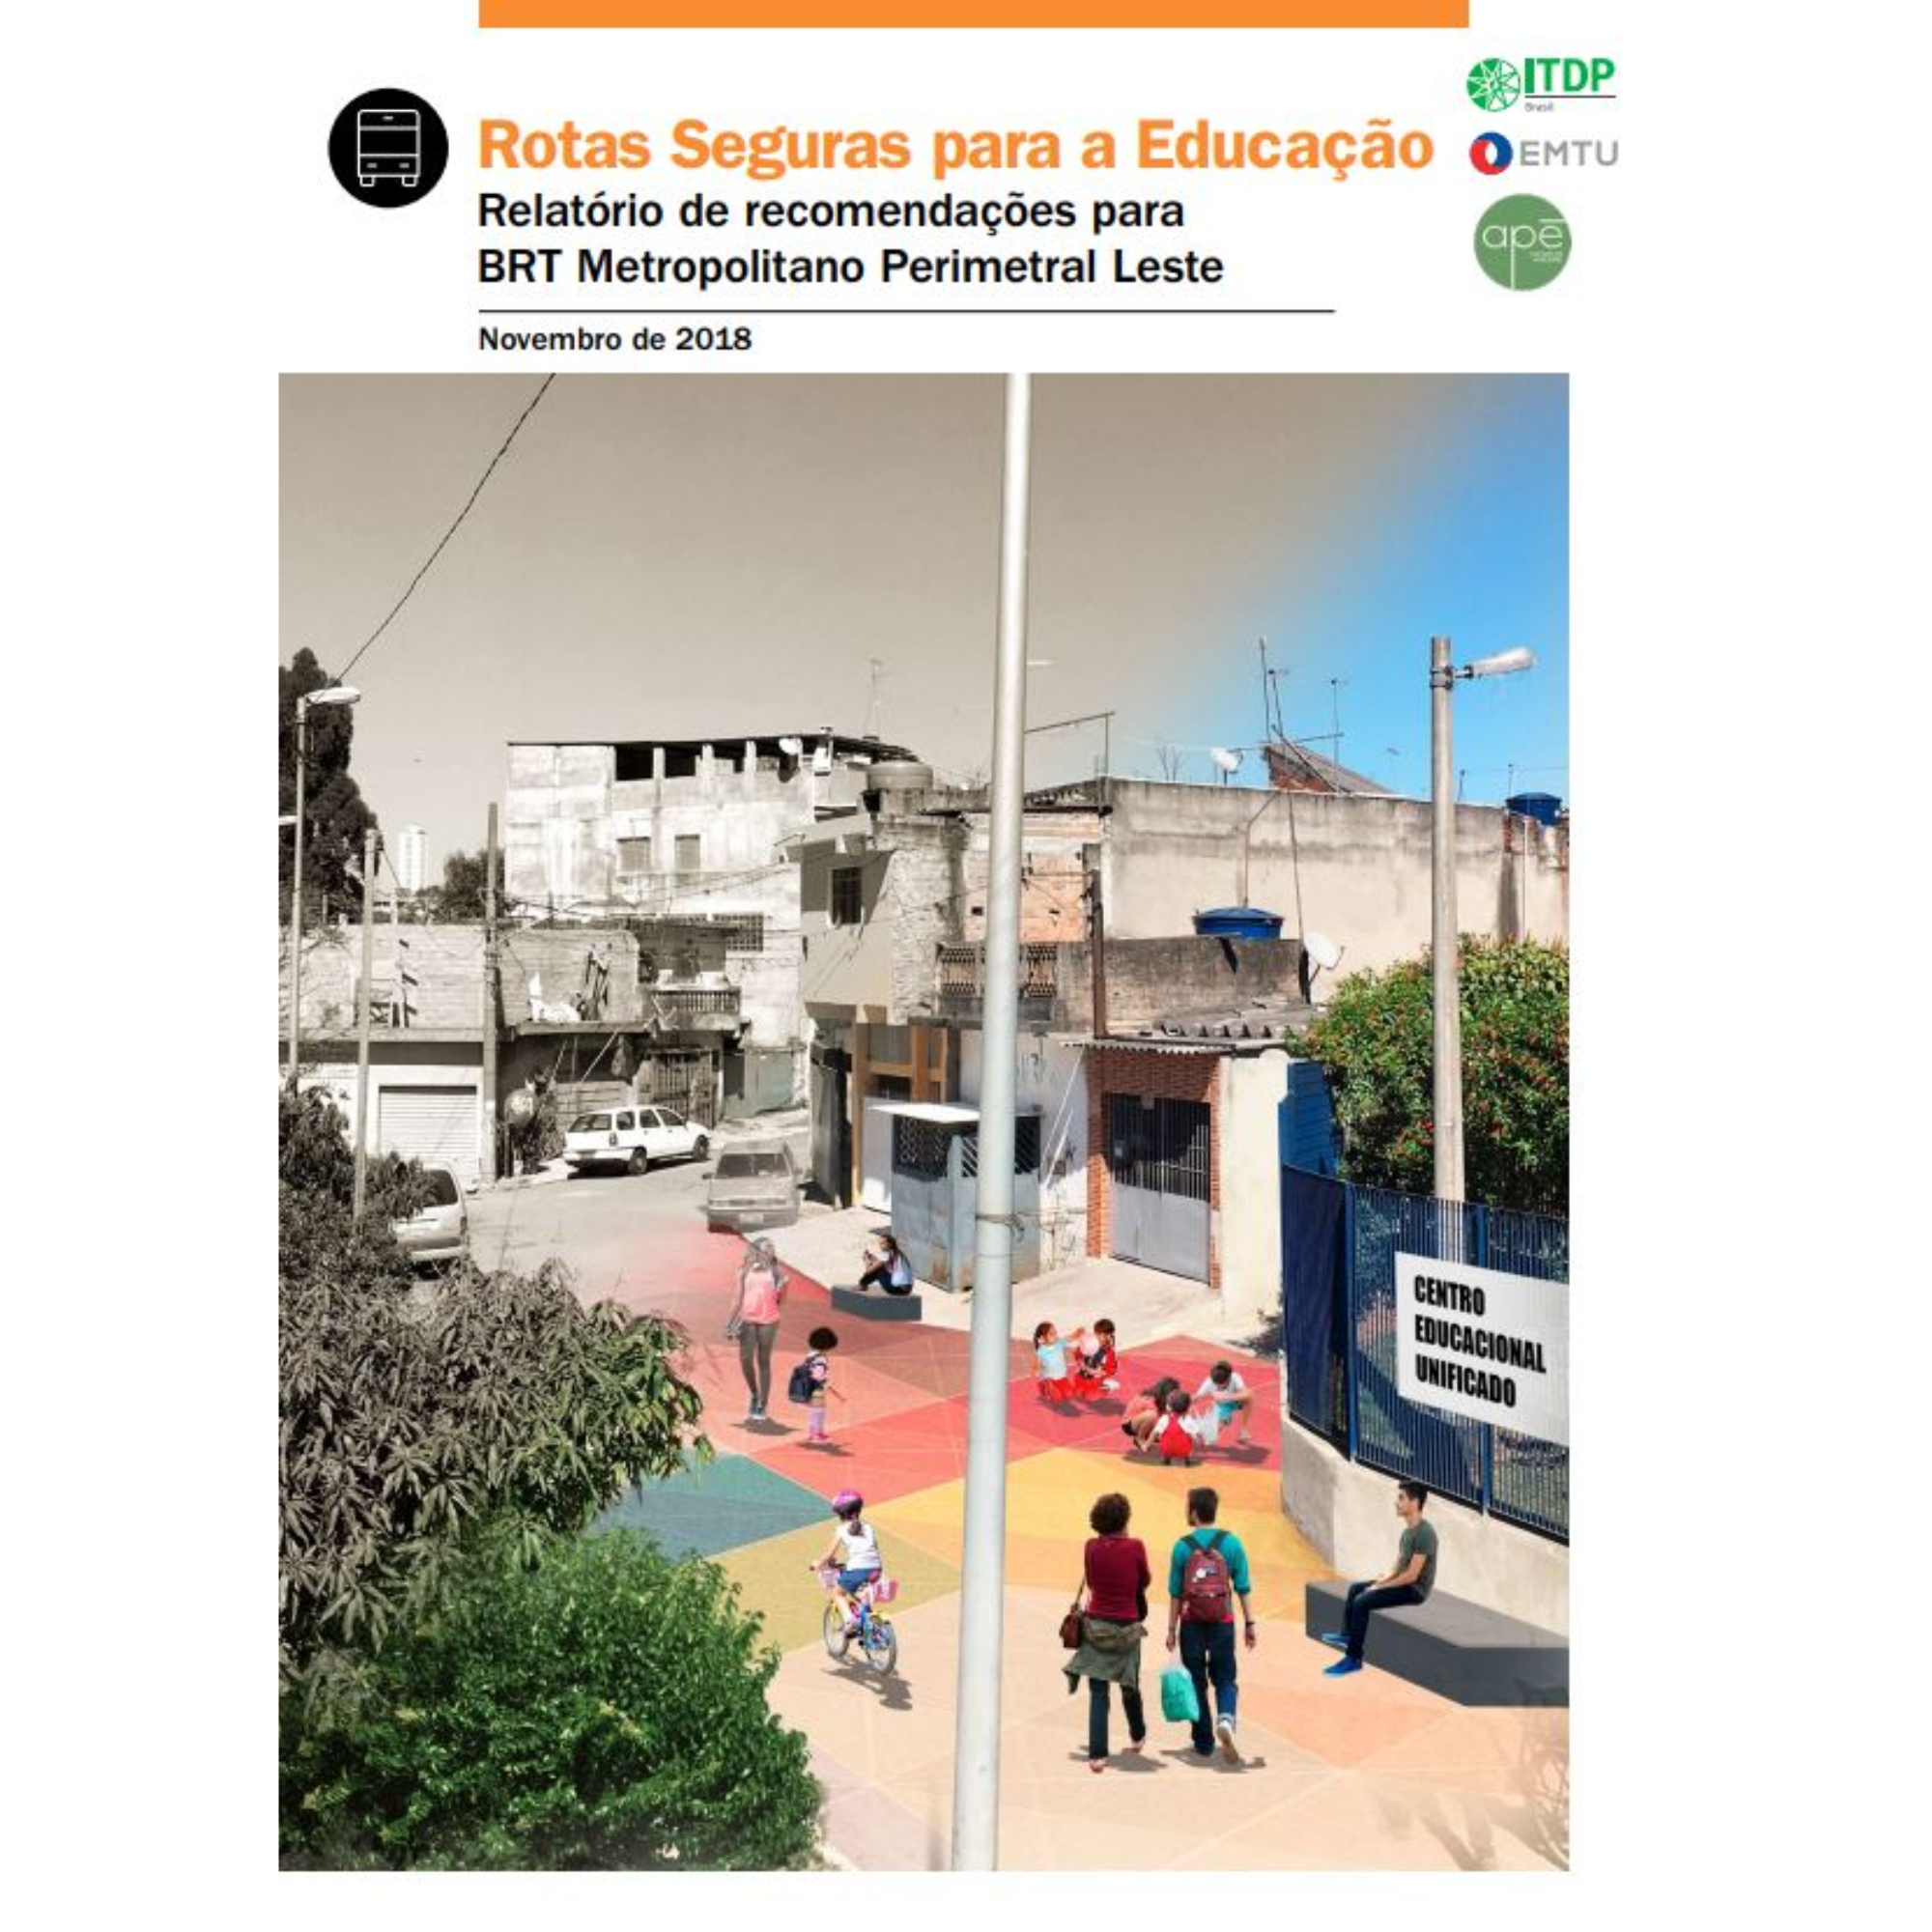 Rotas Seguras para a Educação: relatório de recomendações para BRT Metropolitano Perimetral Leste